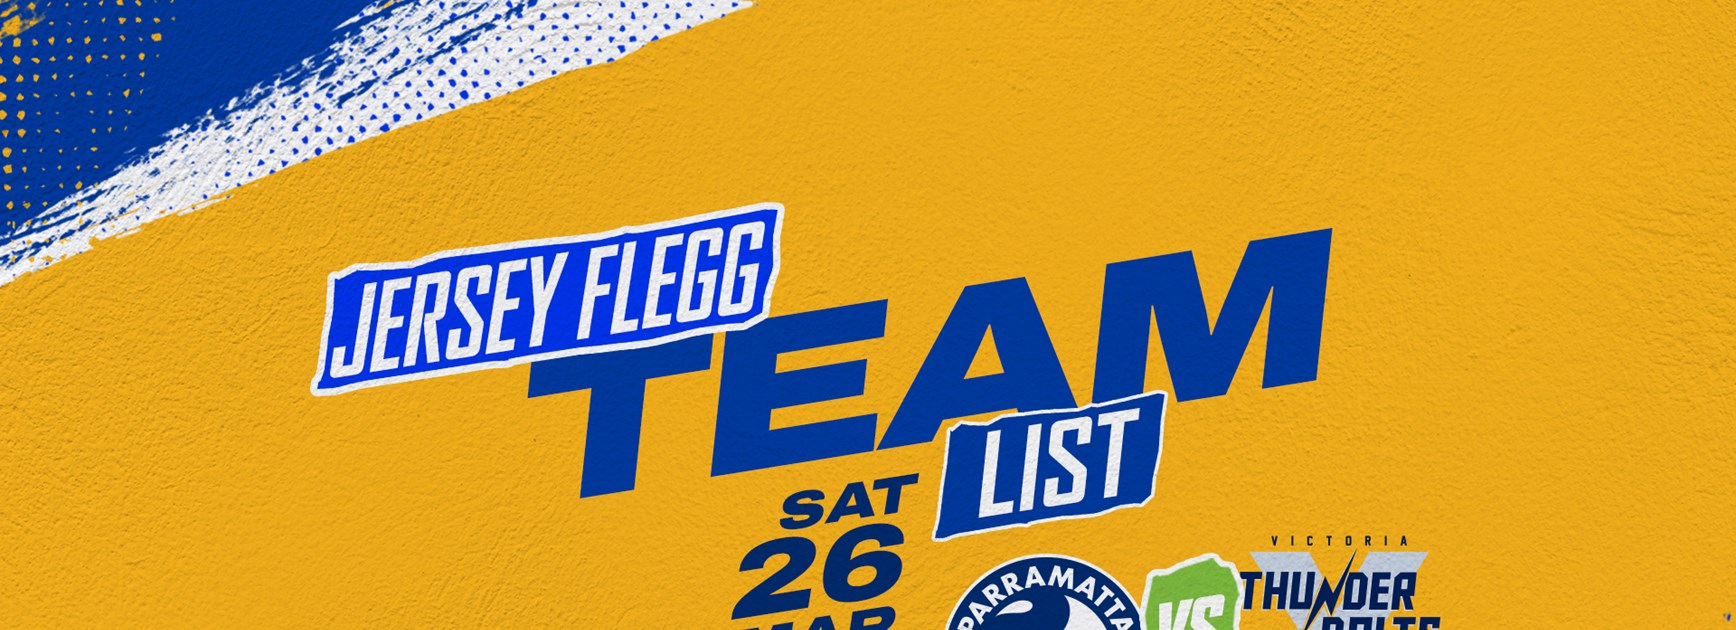 Jersey Flegg Team List -  Thunderbolts v Eels, Round Three